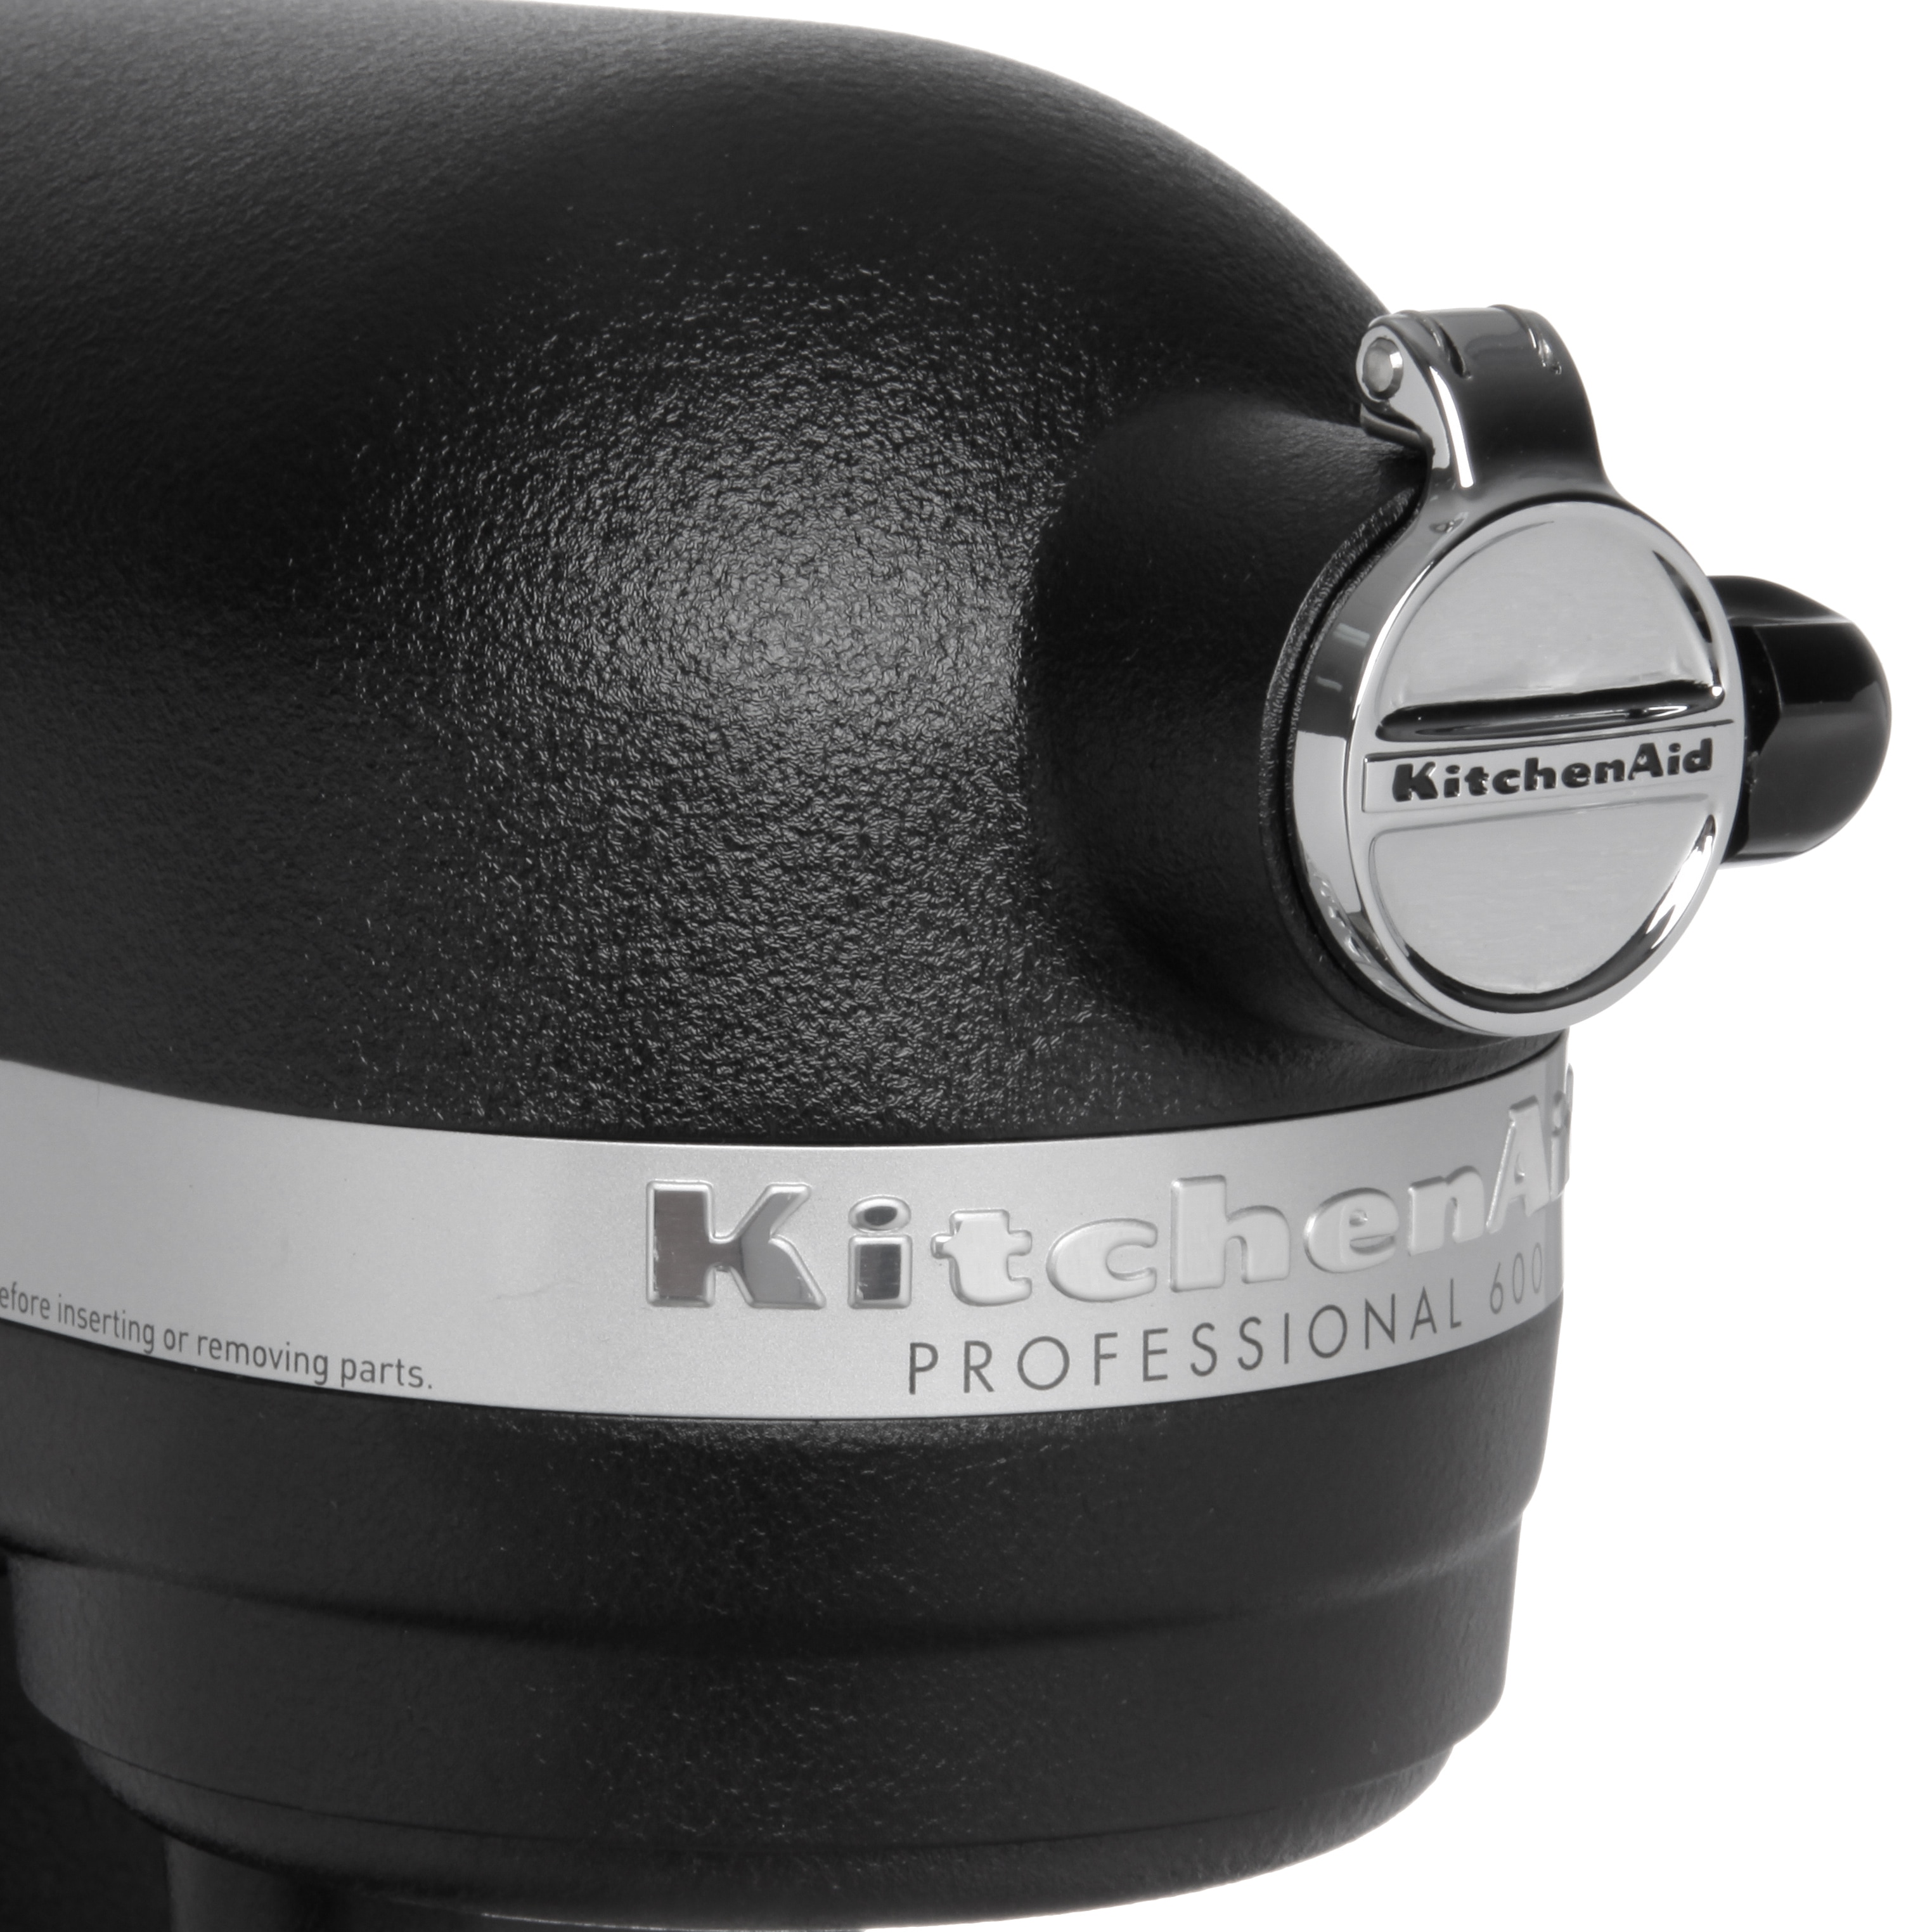 RKP26M1XCS by KitchenAid - Refurbished Professional 600™ Series 6